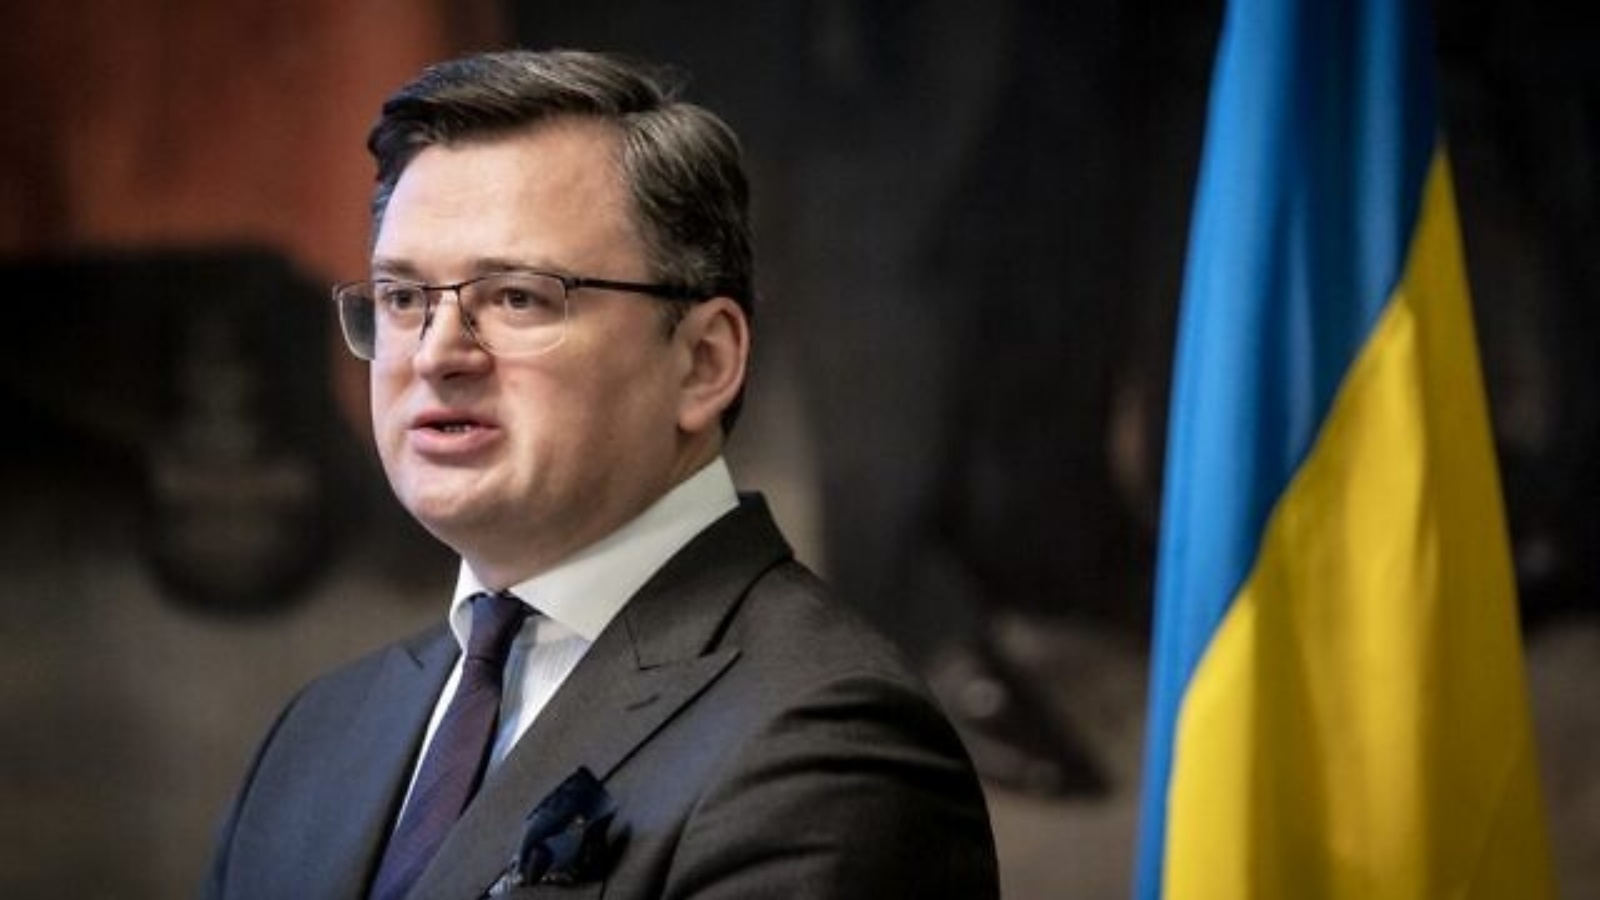 وزير الخارجية الأوكراني دميترو كوليبا يتحدث في كوبنهاغن، الدنمارك، في 27 يناير 2022.